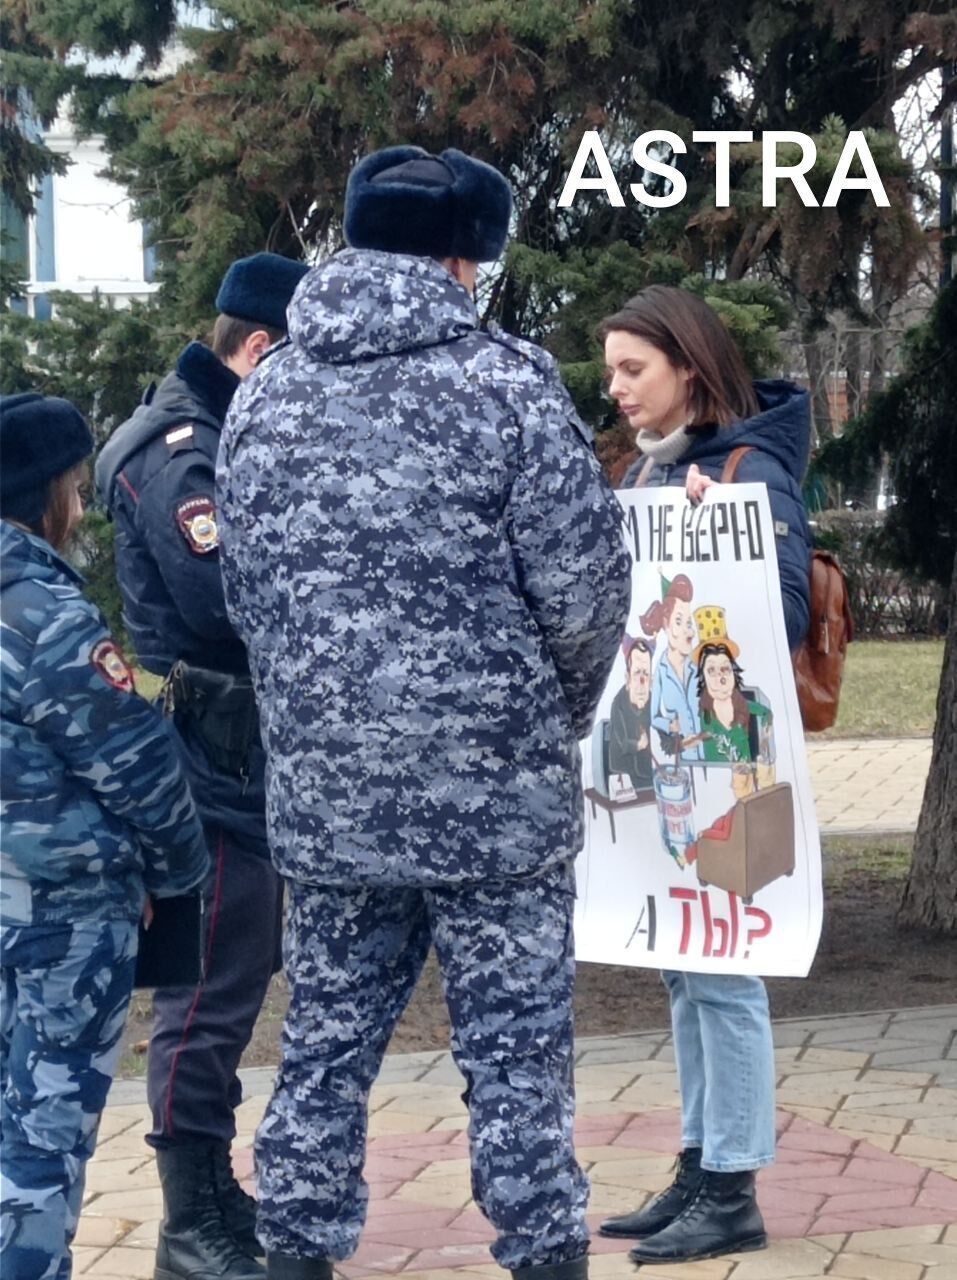 "Я їм не вірю. А ти?" У Воронежі активістка вийшла на одиночний пікет з антивоєнним шаржем. Фото